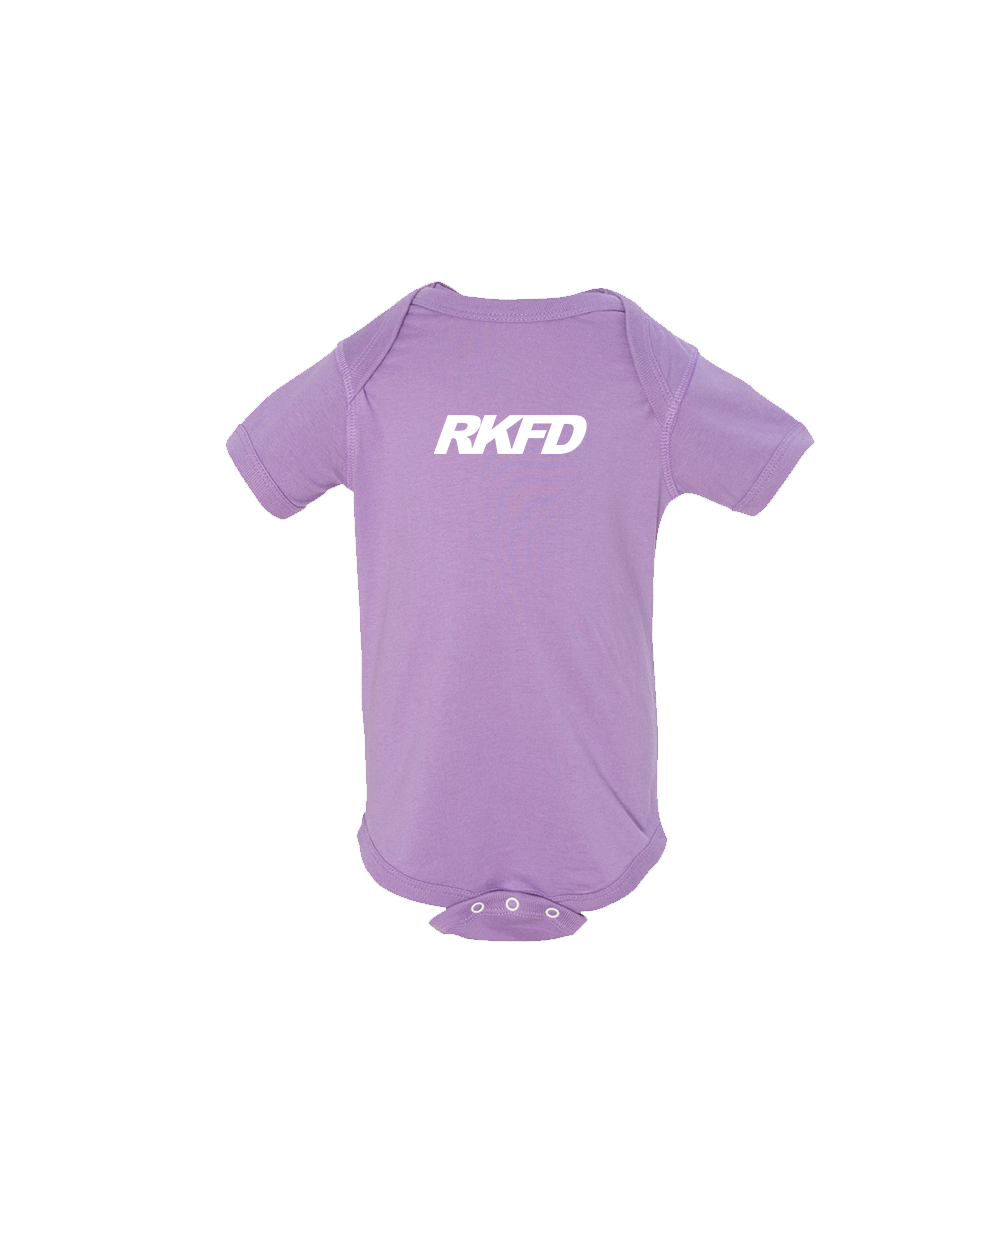 RKFD onesie (Lavender)